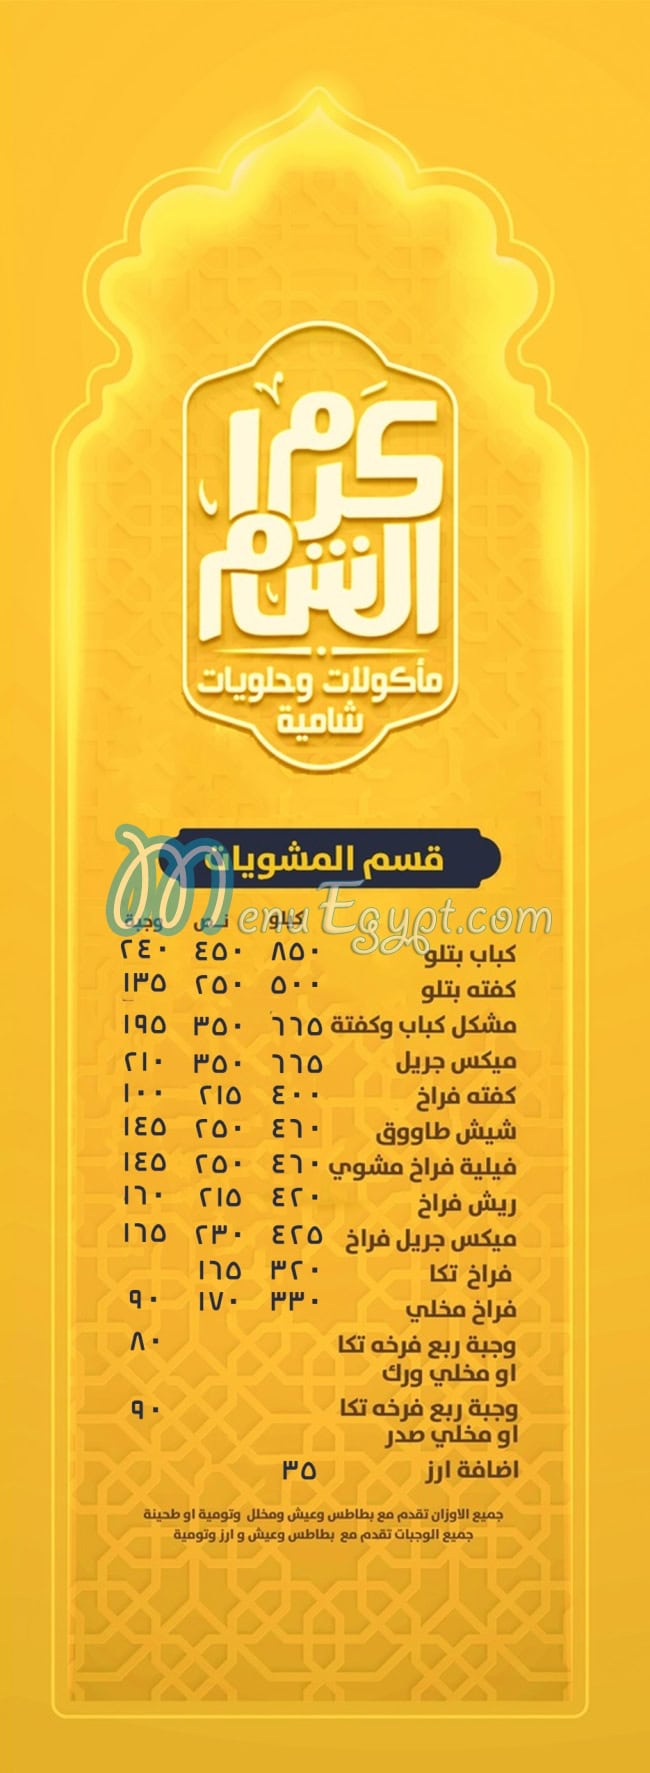 Karam El Sham menu